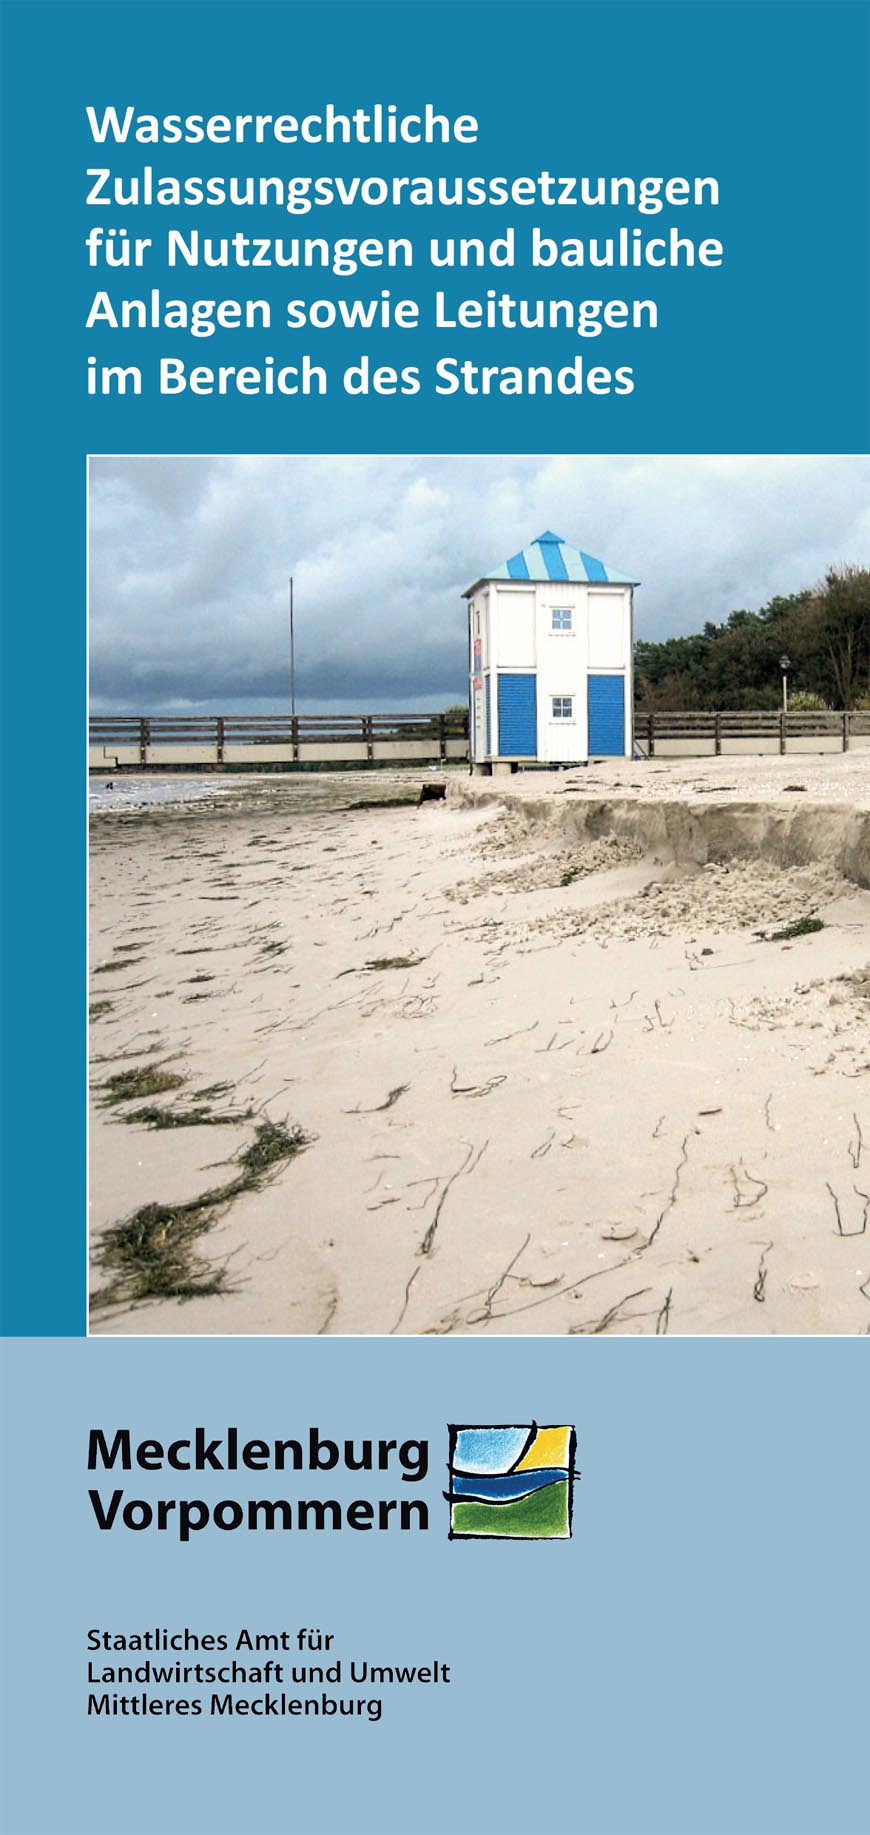 Titelblatt des Flyers Wasserrechtliche Zulassungsvoraussetzungen für Nutzungen und bauliche Anlagen sowie Leitungen im Bereich des Strandes mit einer Strandhütte und einem Steg